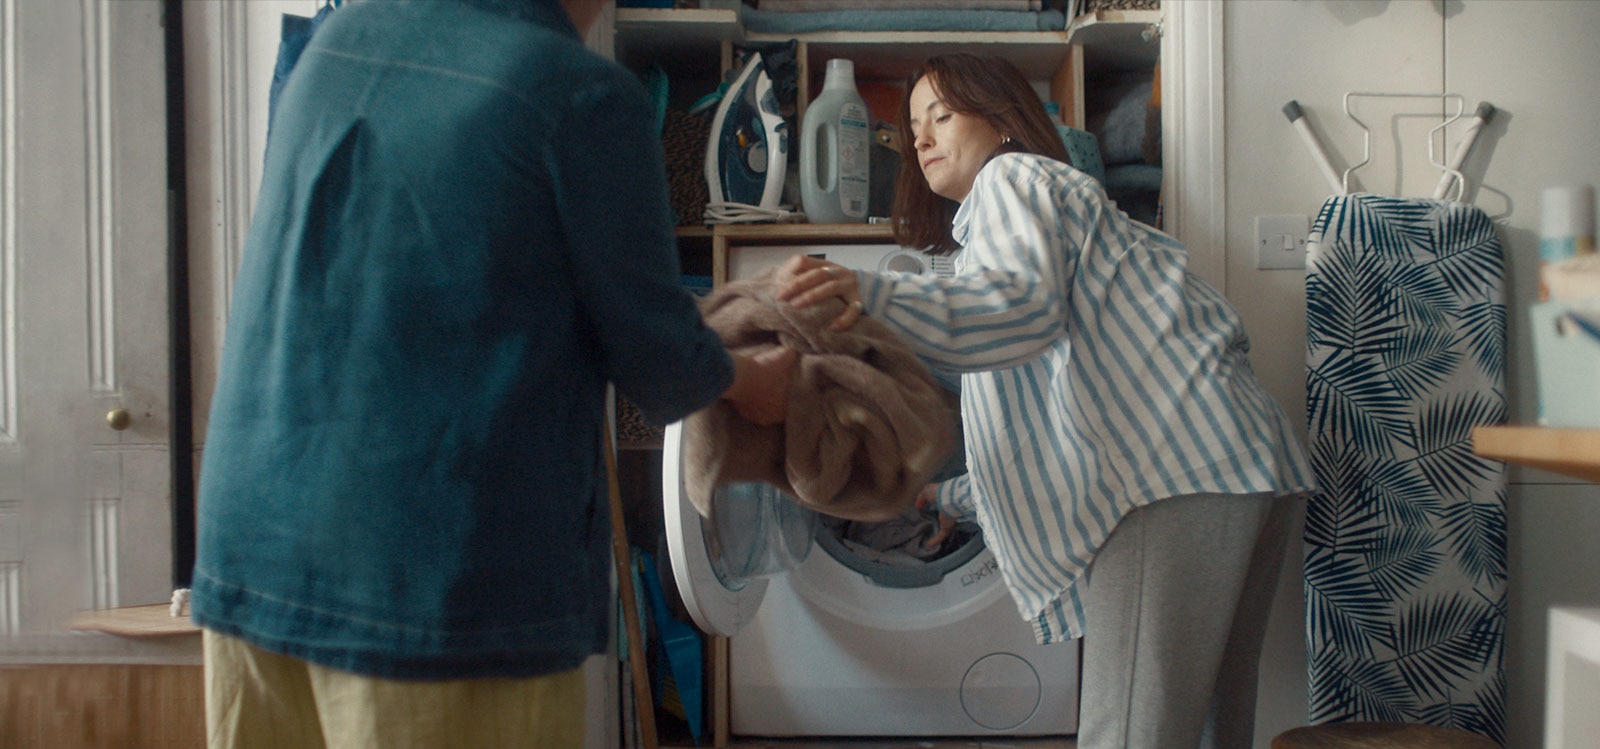 Žena vyberá bielizeň z práčky a podáva ju svojej mame.